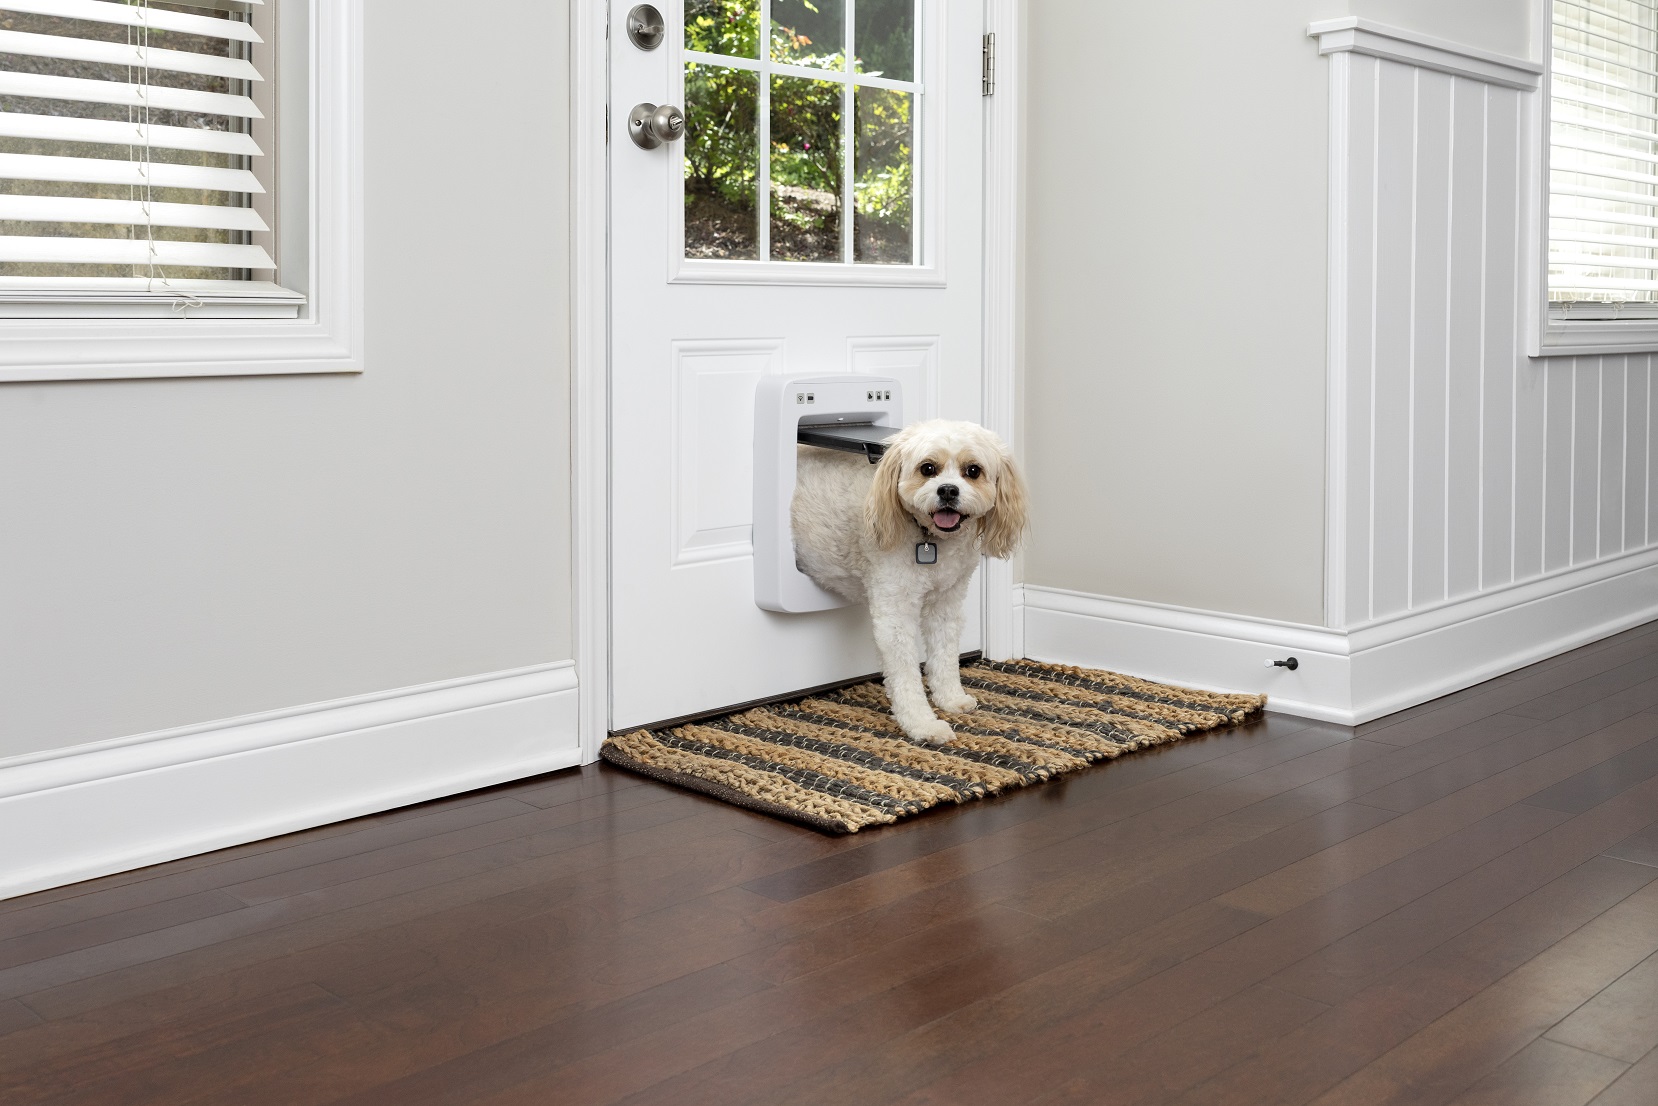 PetSafe SmartDoor Connected Pet Door - Medium size